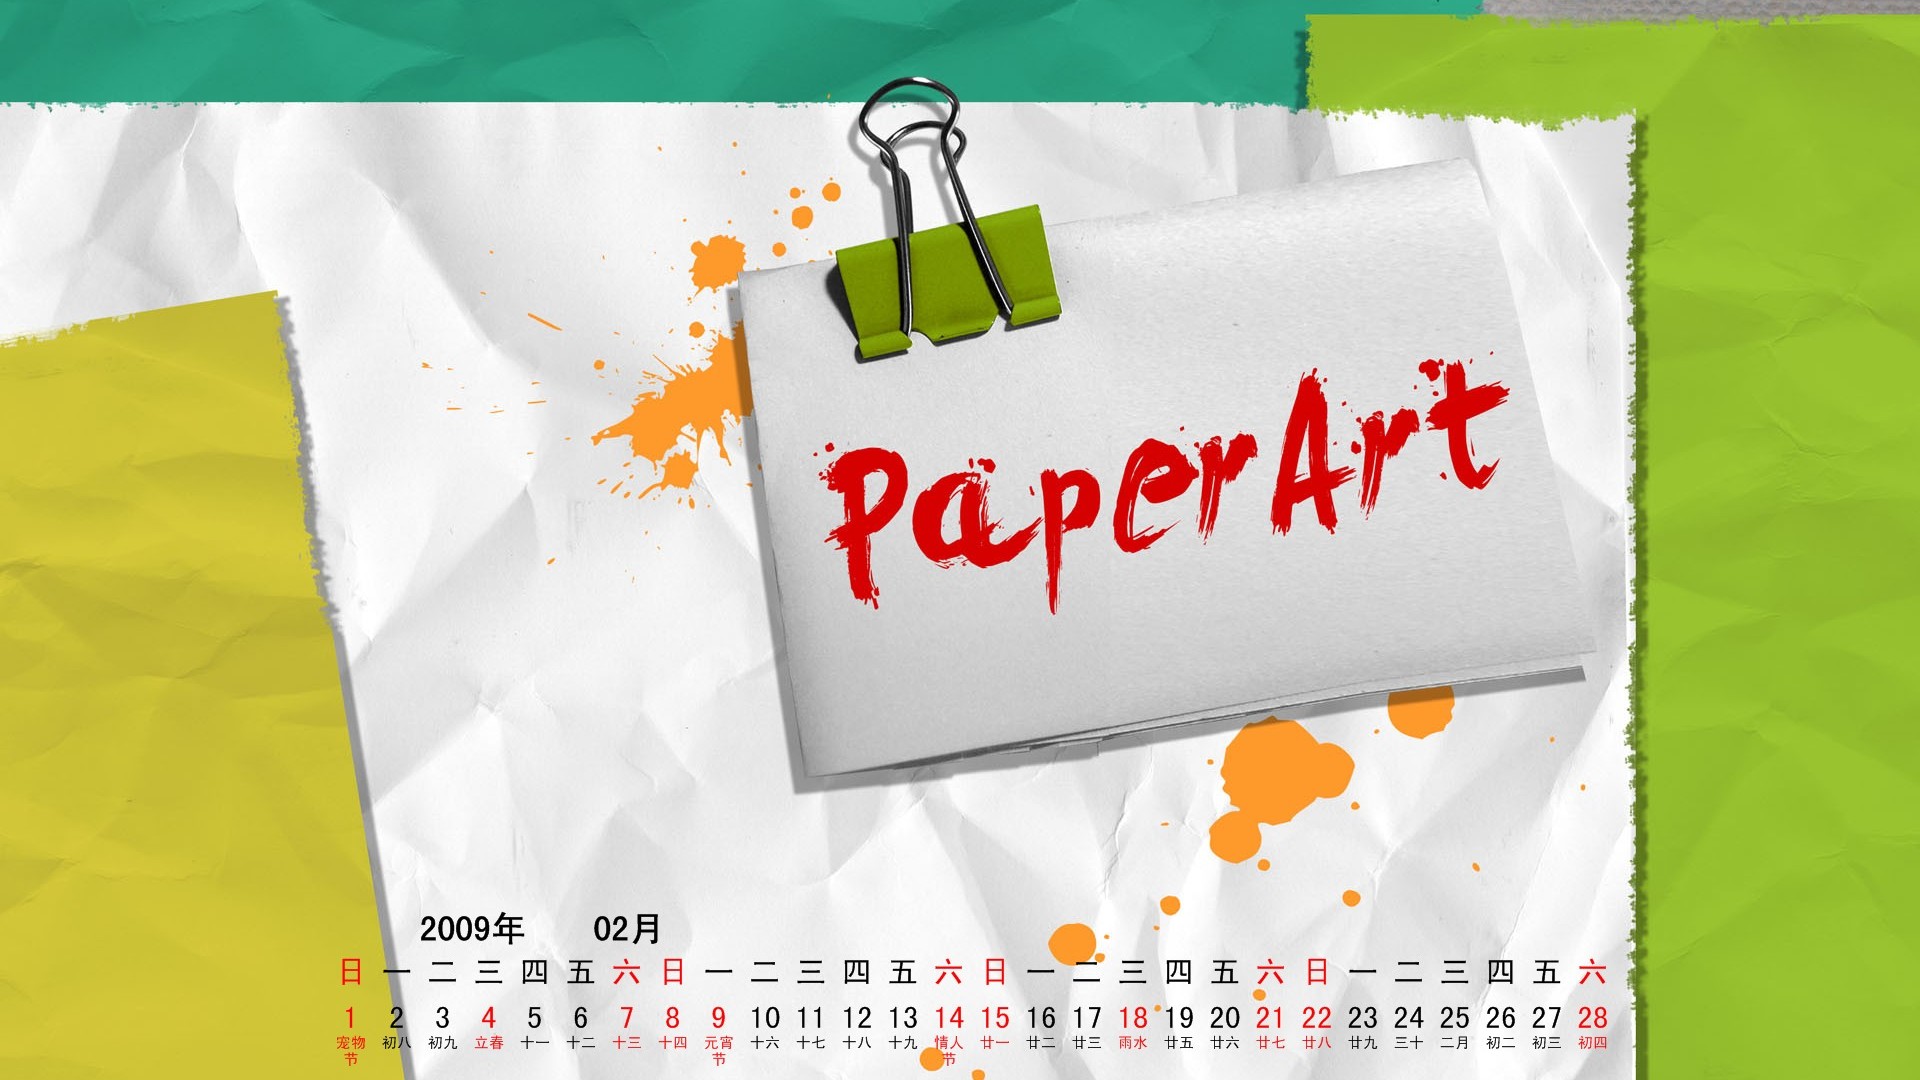 PaperArt 09 años en el fondo de pantalla de calendario febrero #15 - 1920x1080